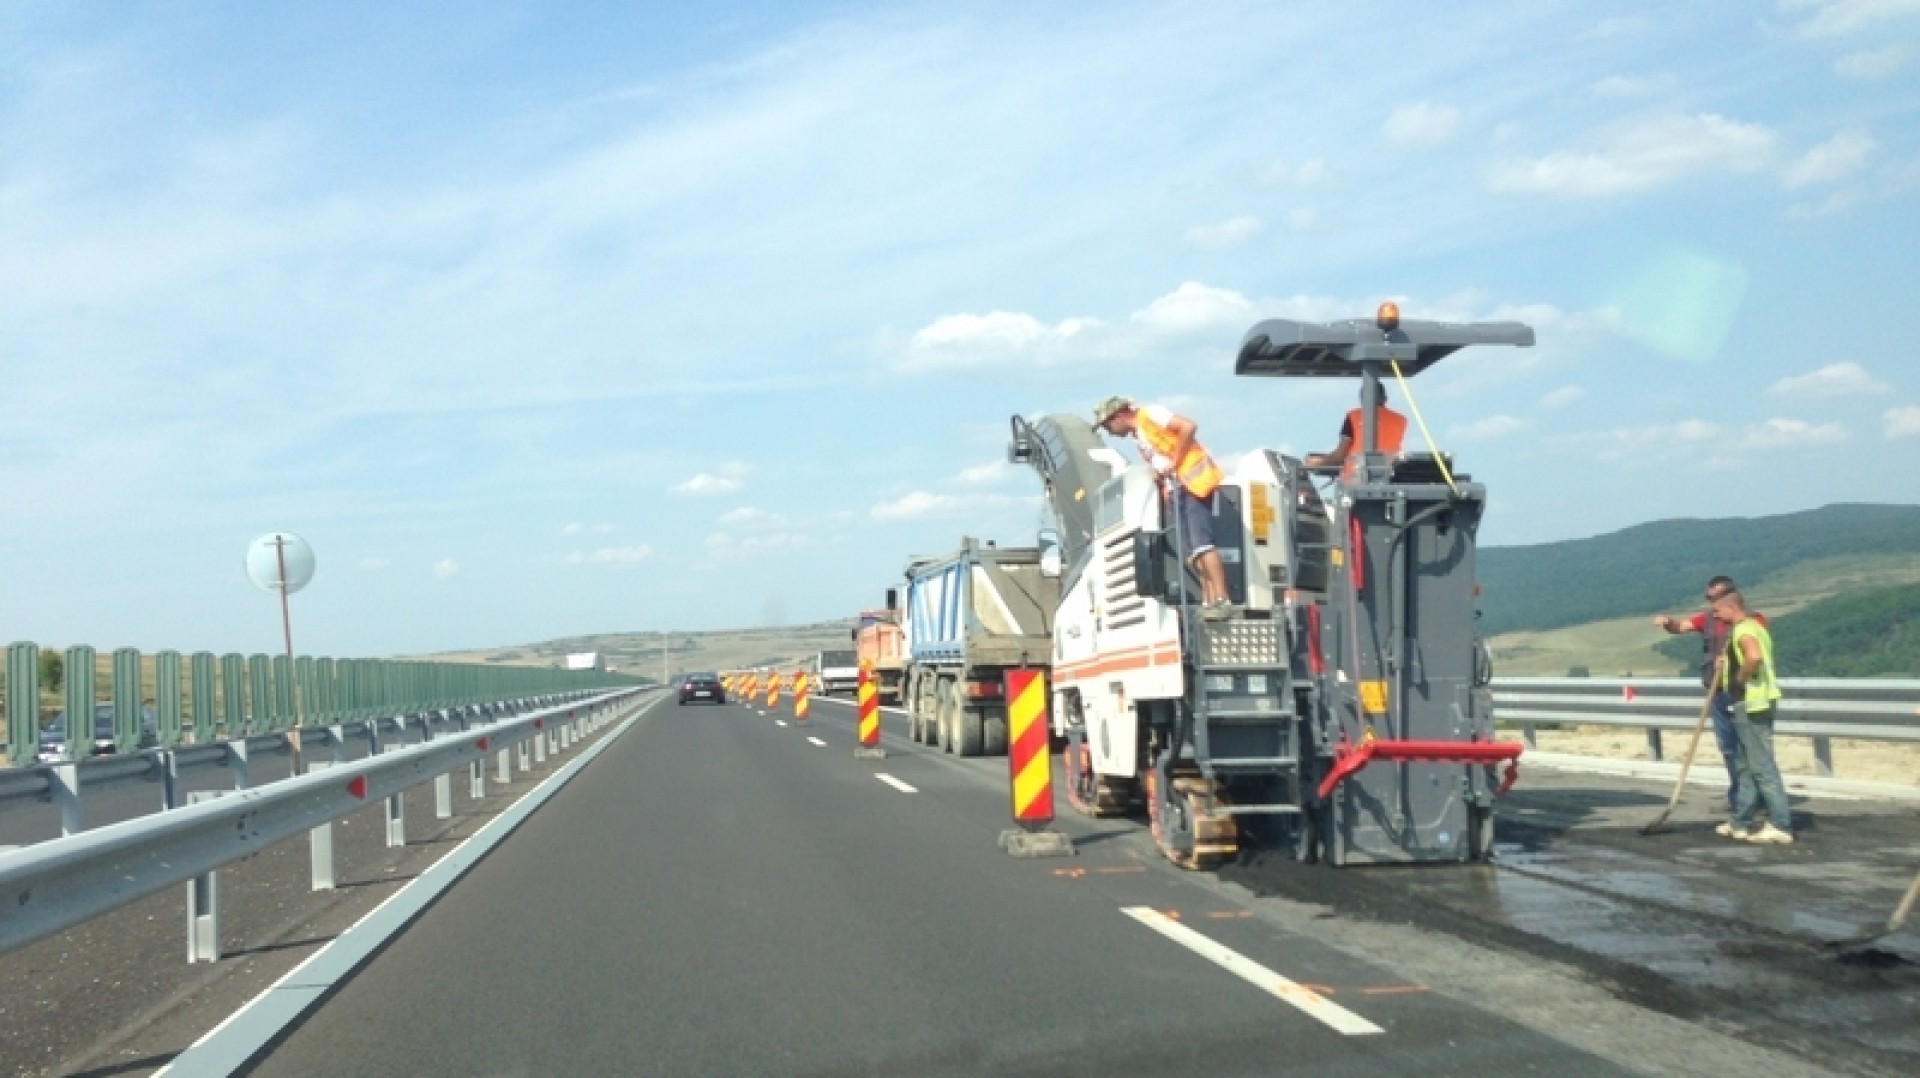 Lucrări de reparaţii autostrăzi, traficul fiind restricţionat